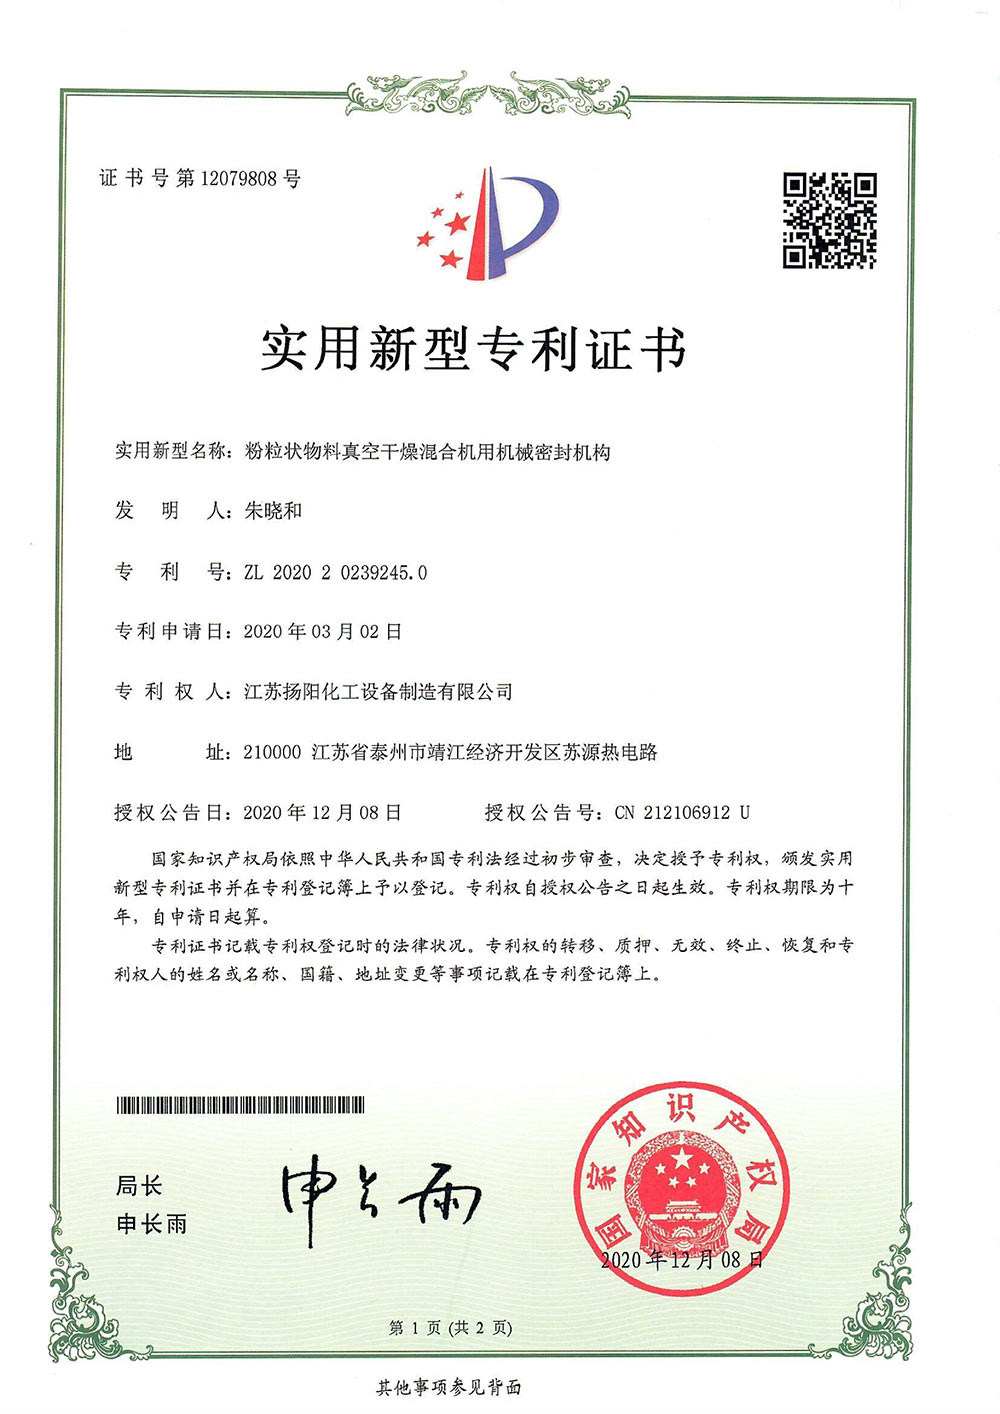 Utility model certificate of Hefei Zhengzheng Yuanqi 2020